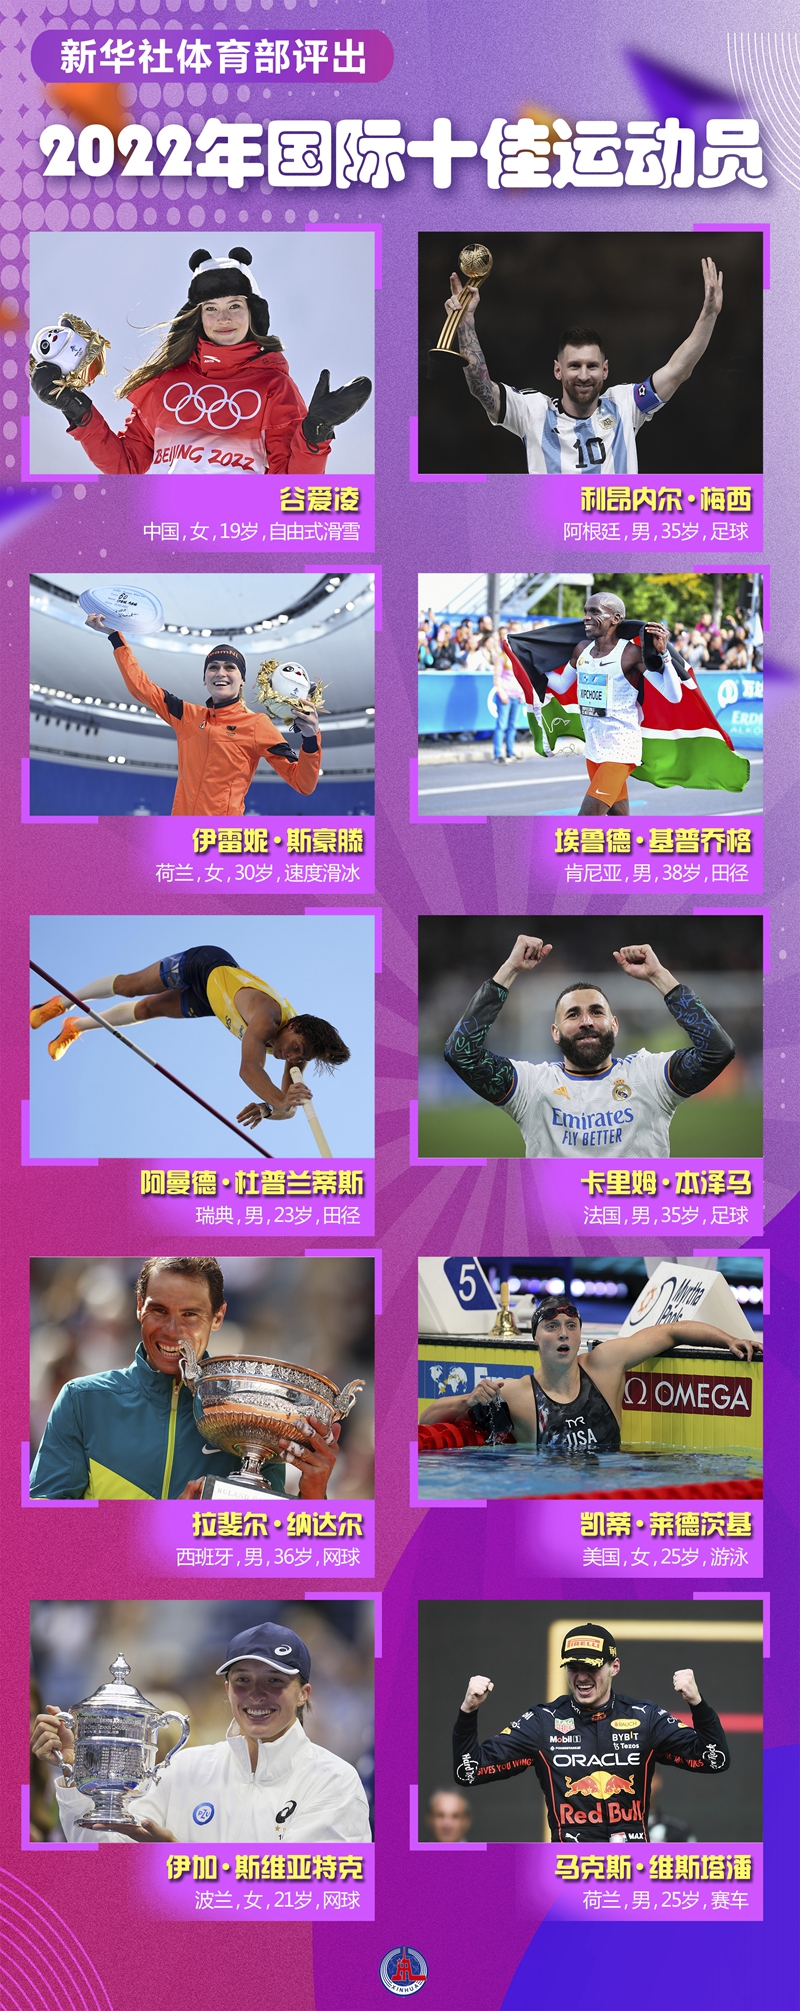 新华社体育部评出2022年国际十佳运动员